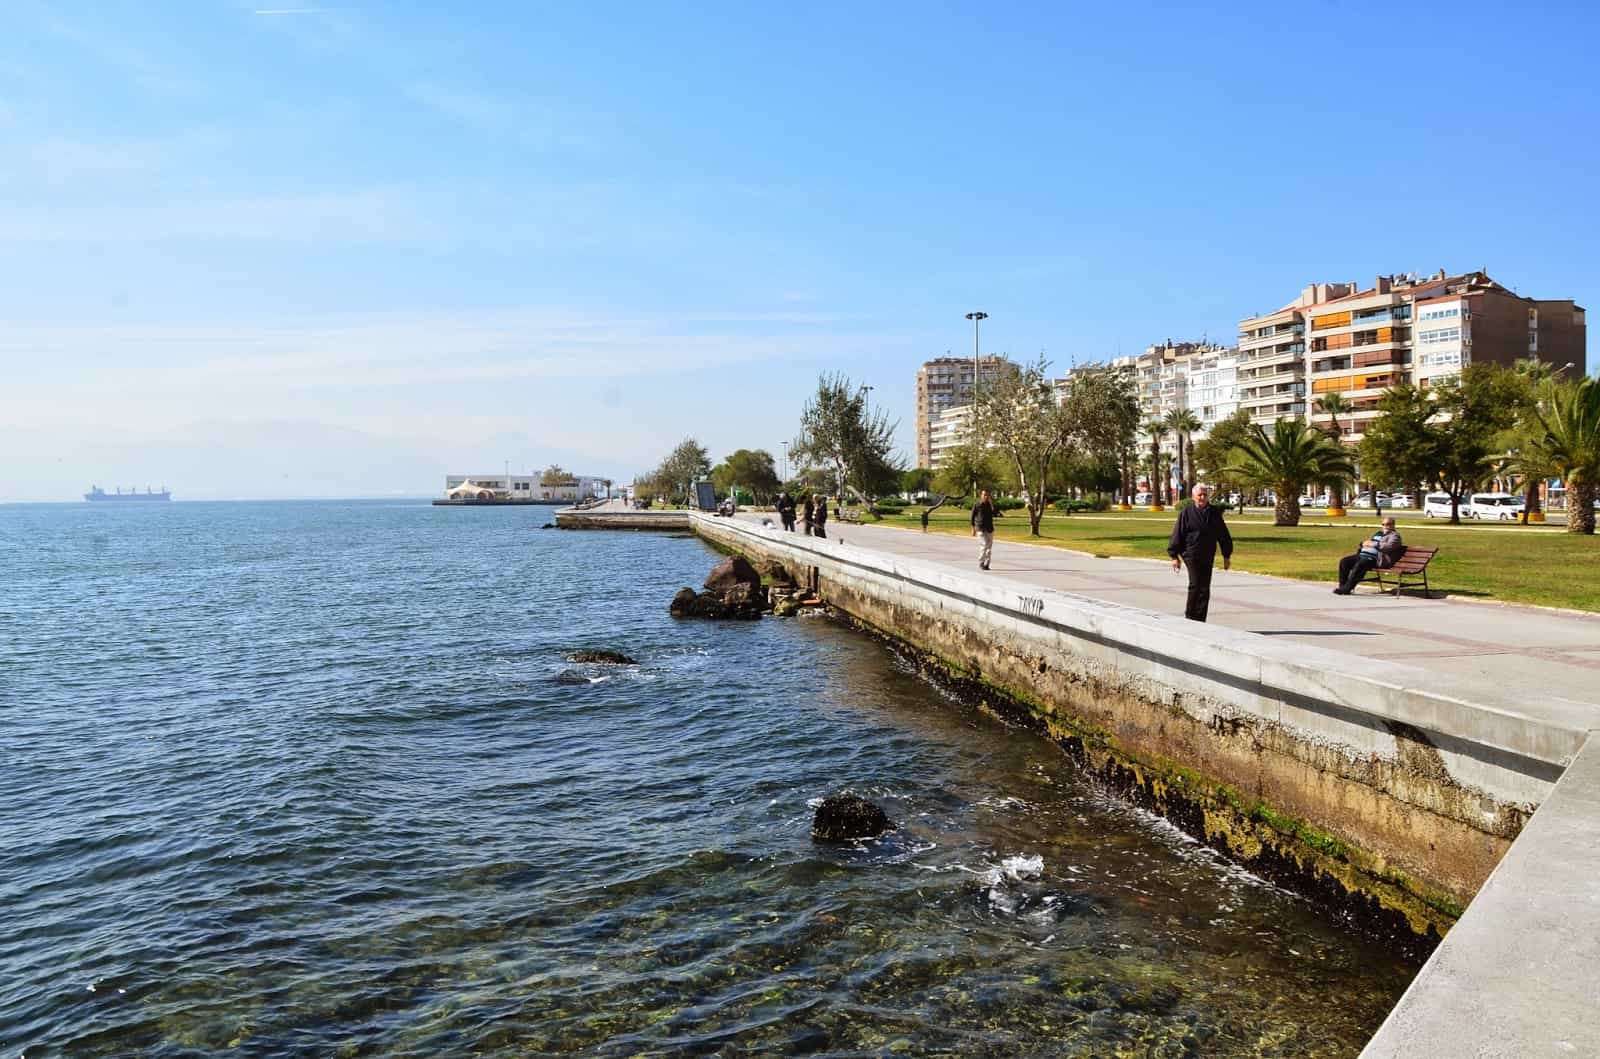 Seaside promenade in Karşıyaka, Izmir, Turkey